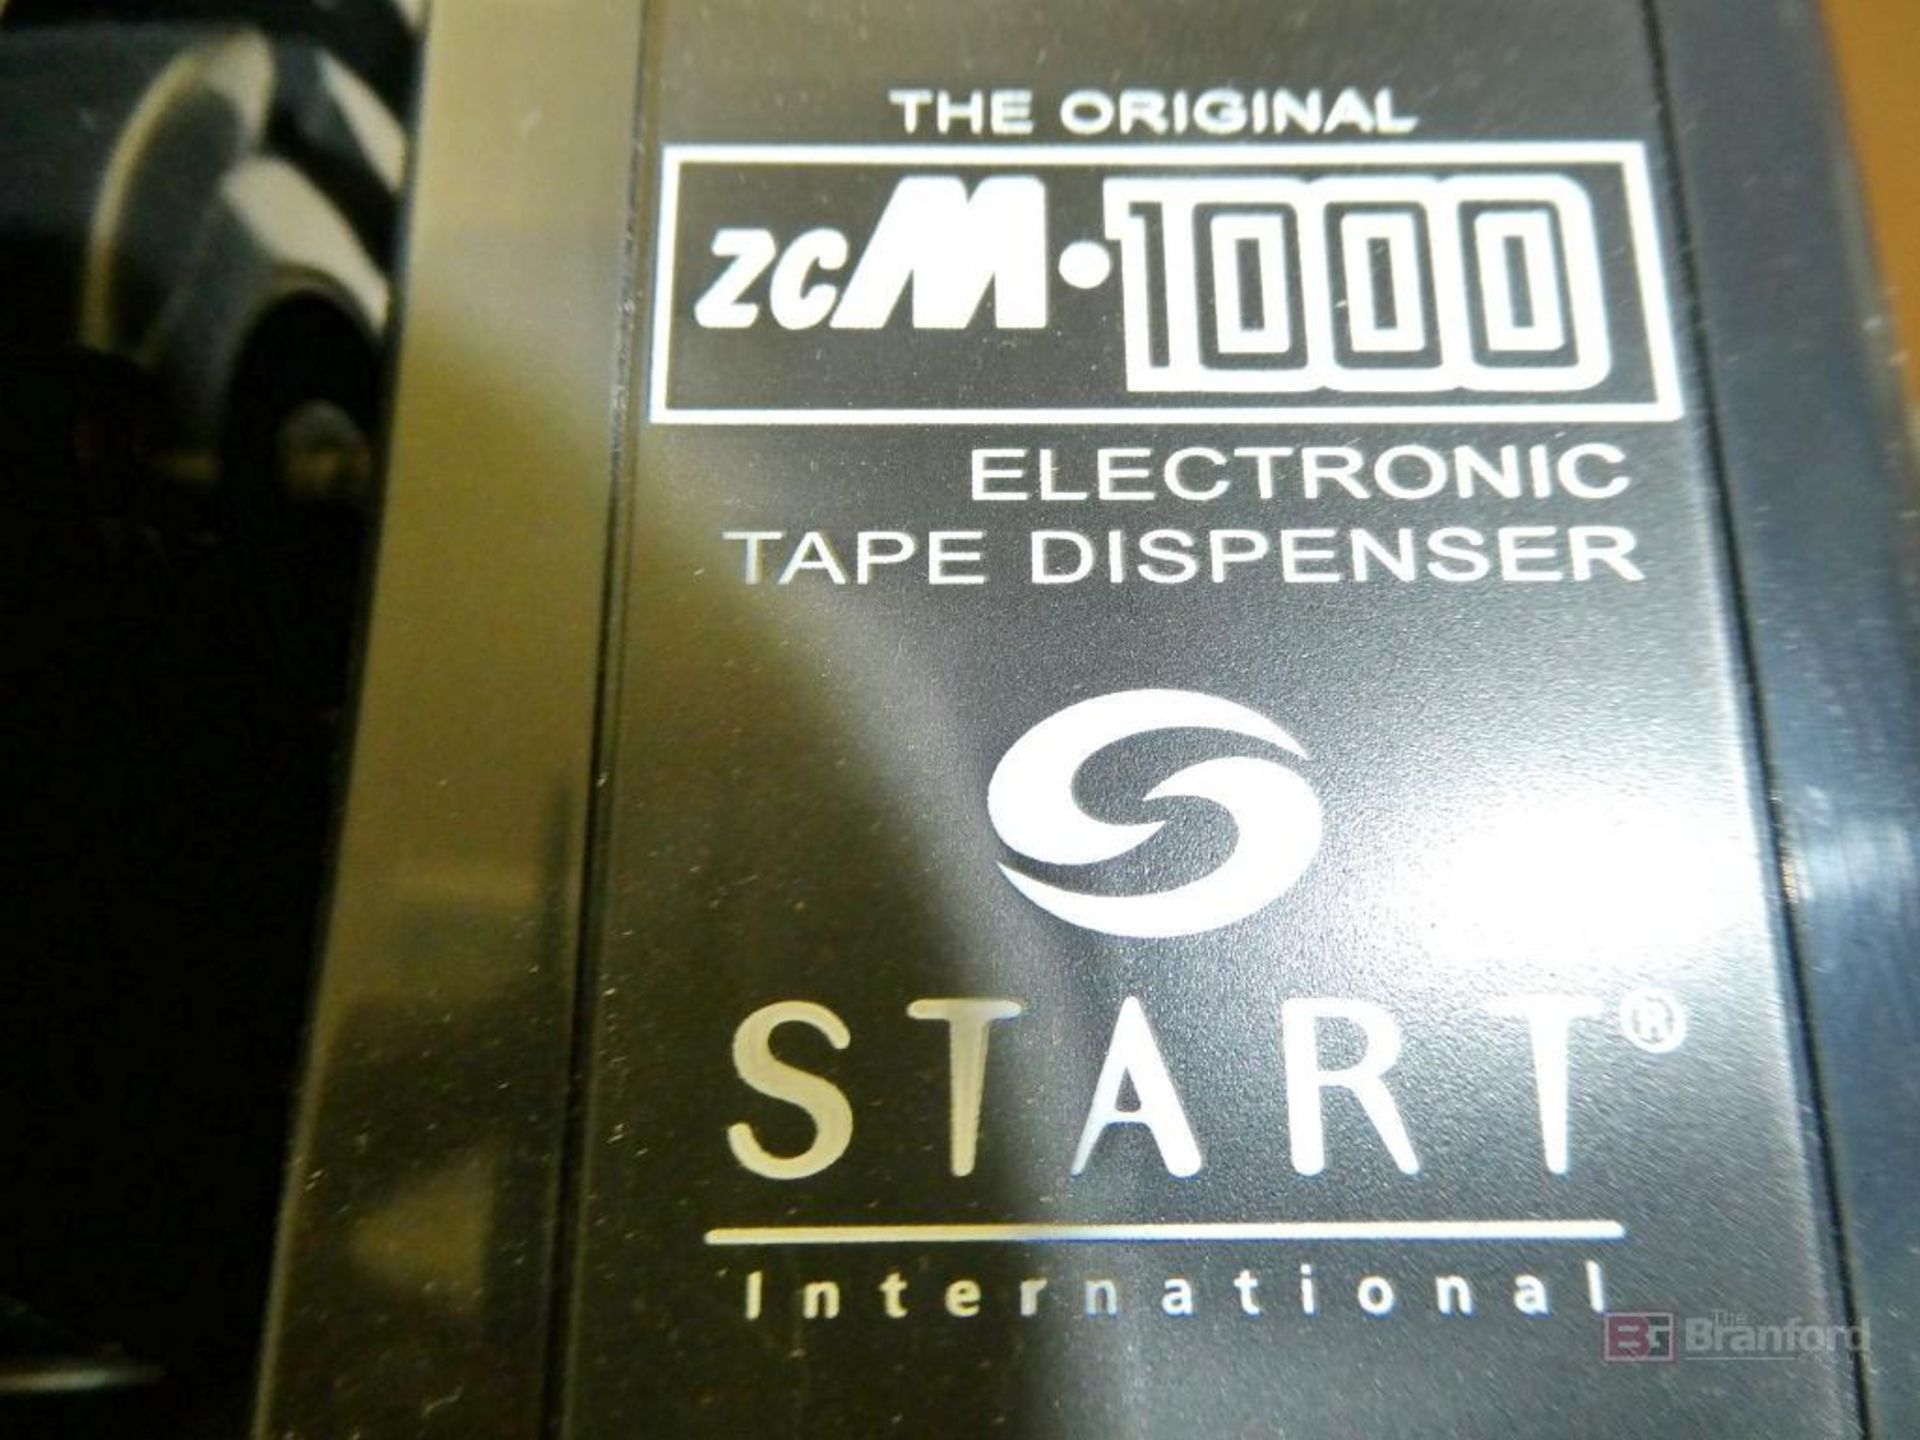 (2) Start Model ZCM-1000, Electric Tape Dispenser - Image 3 of 3